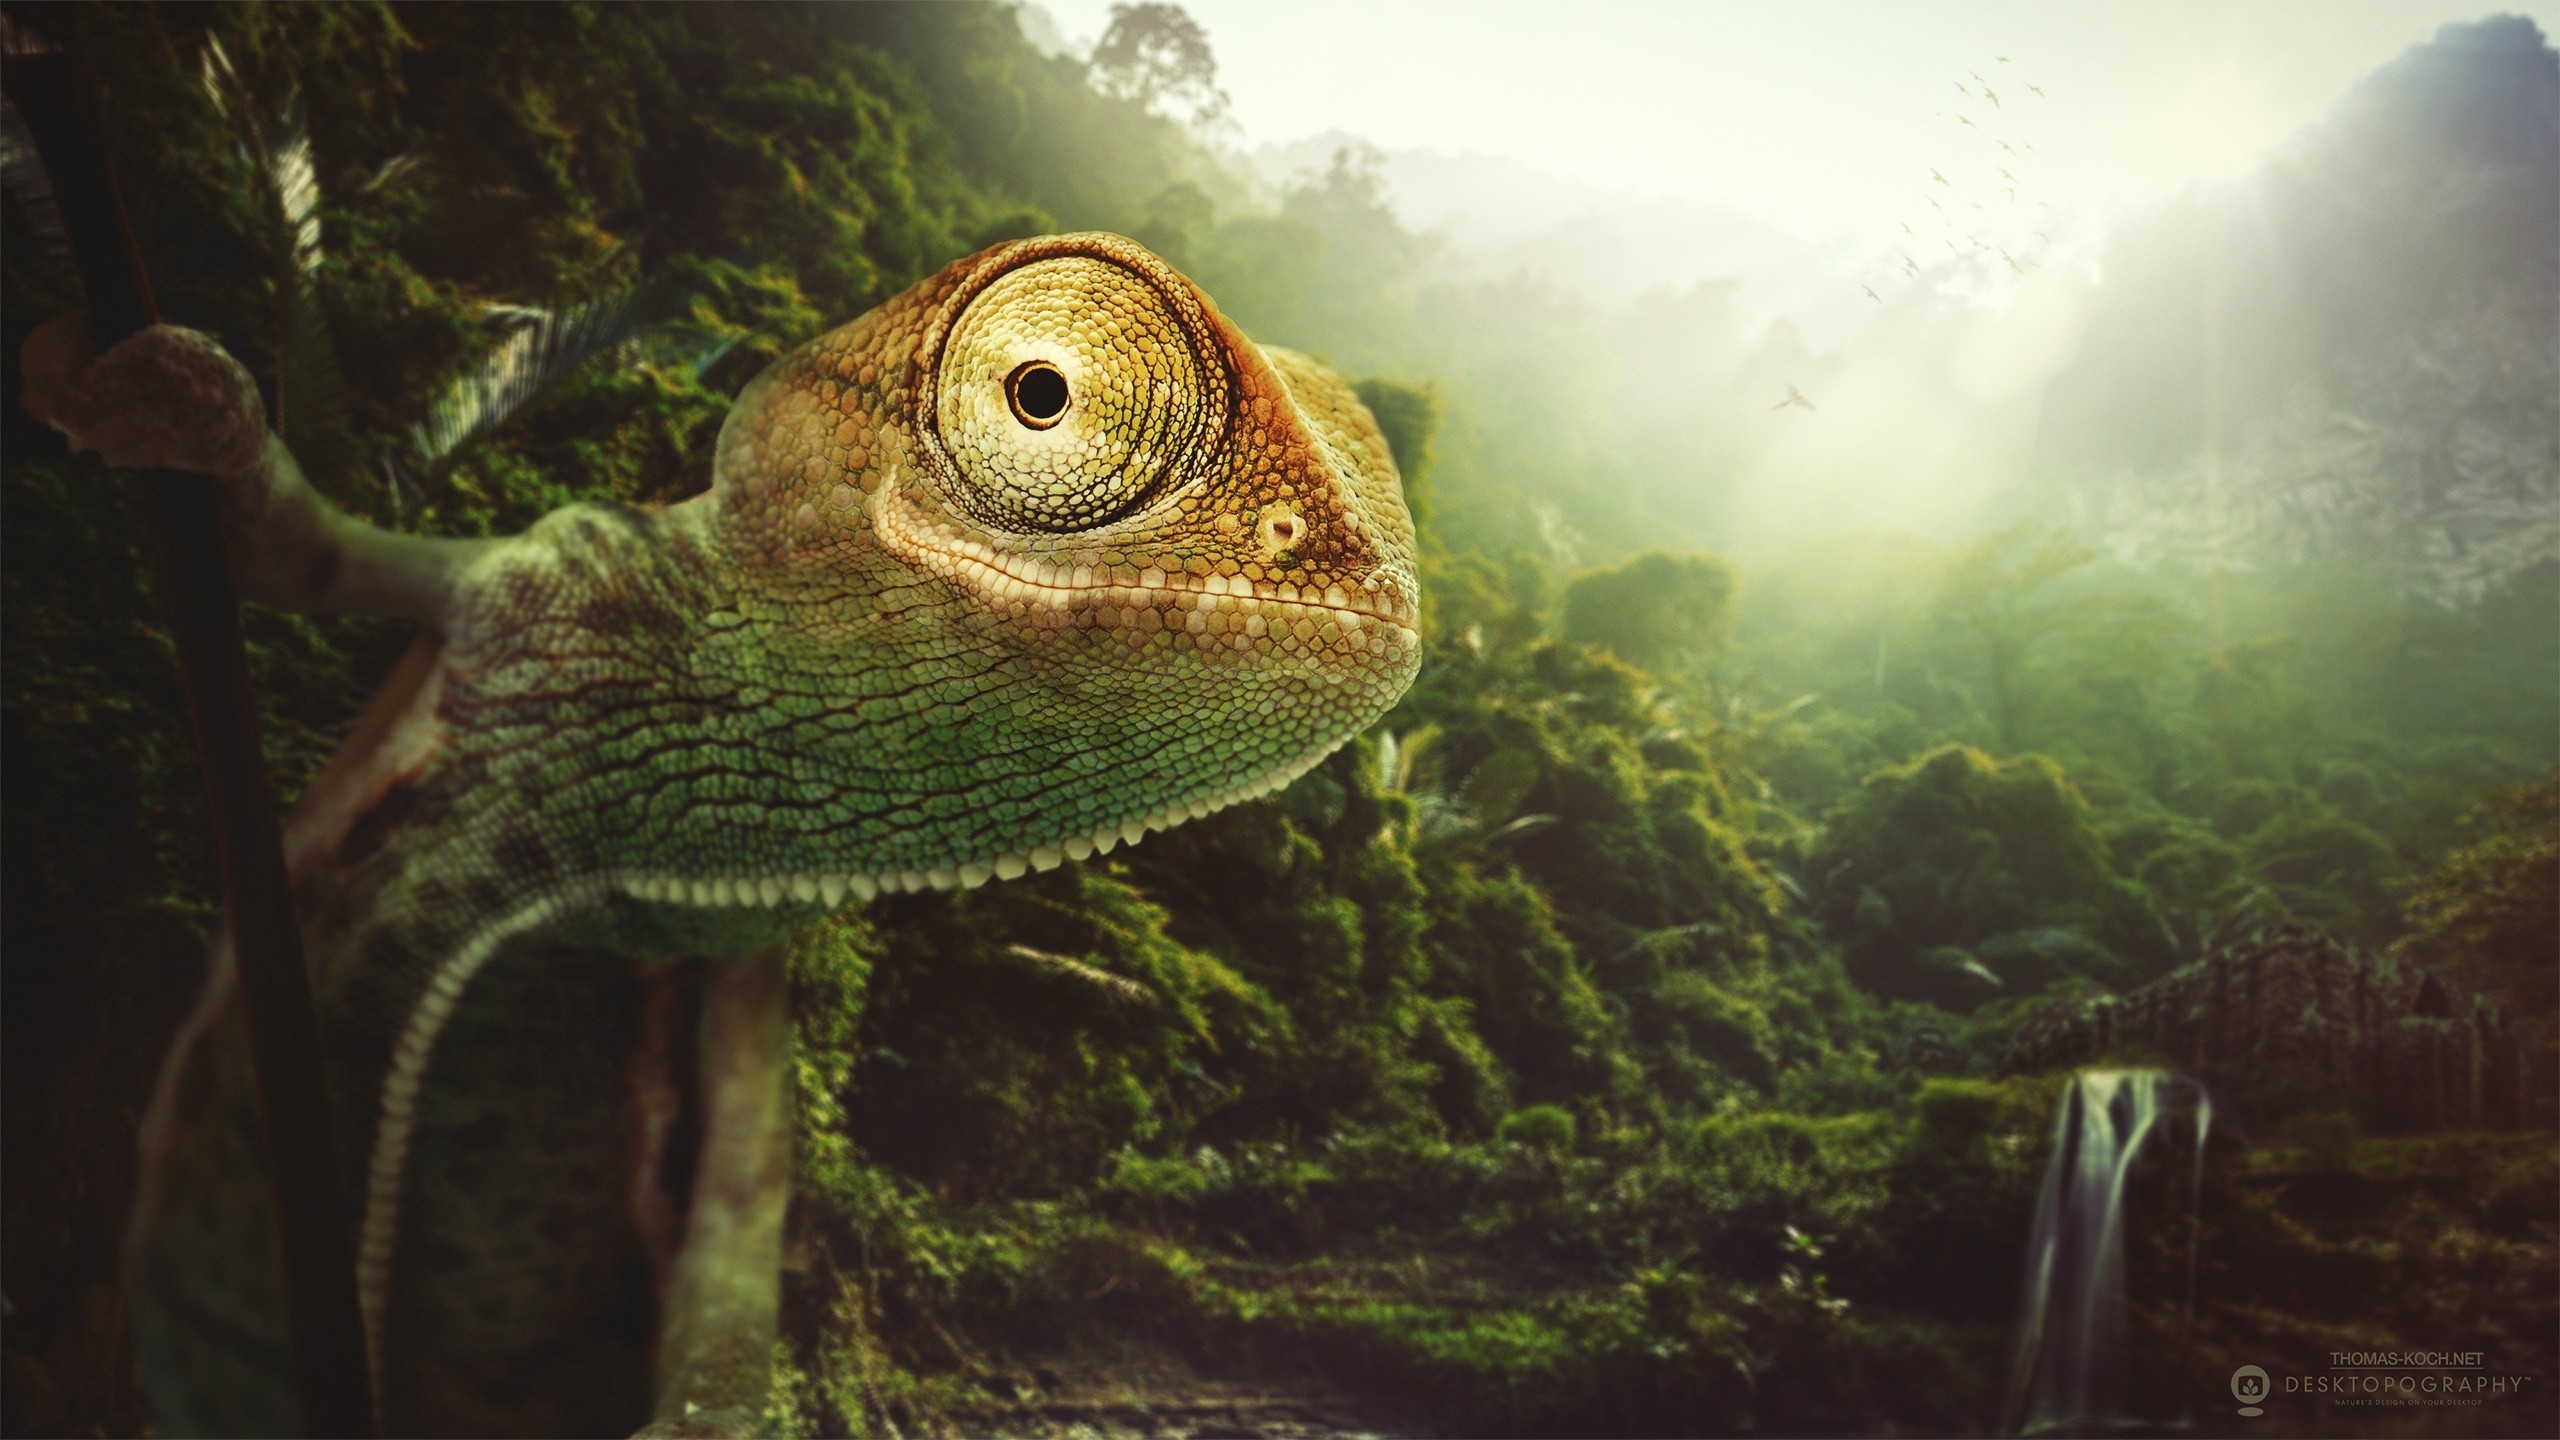 General 2560x1440 Desktopography digital art animals lizards